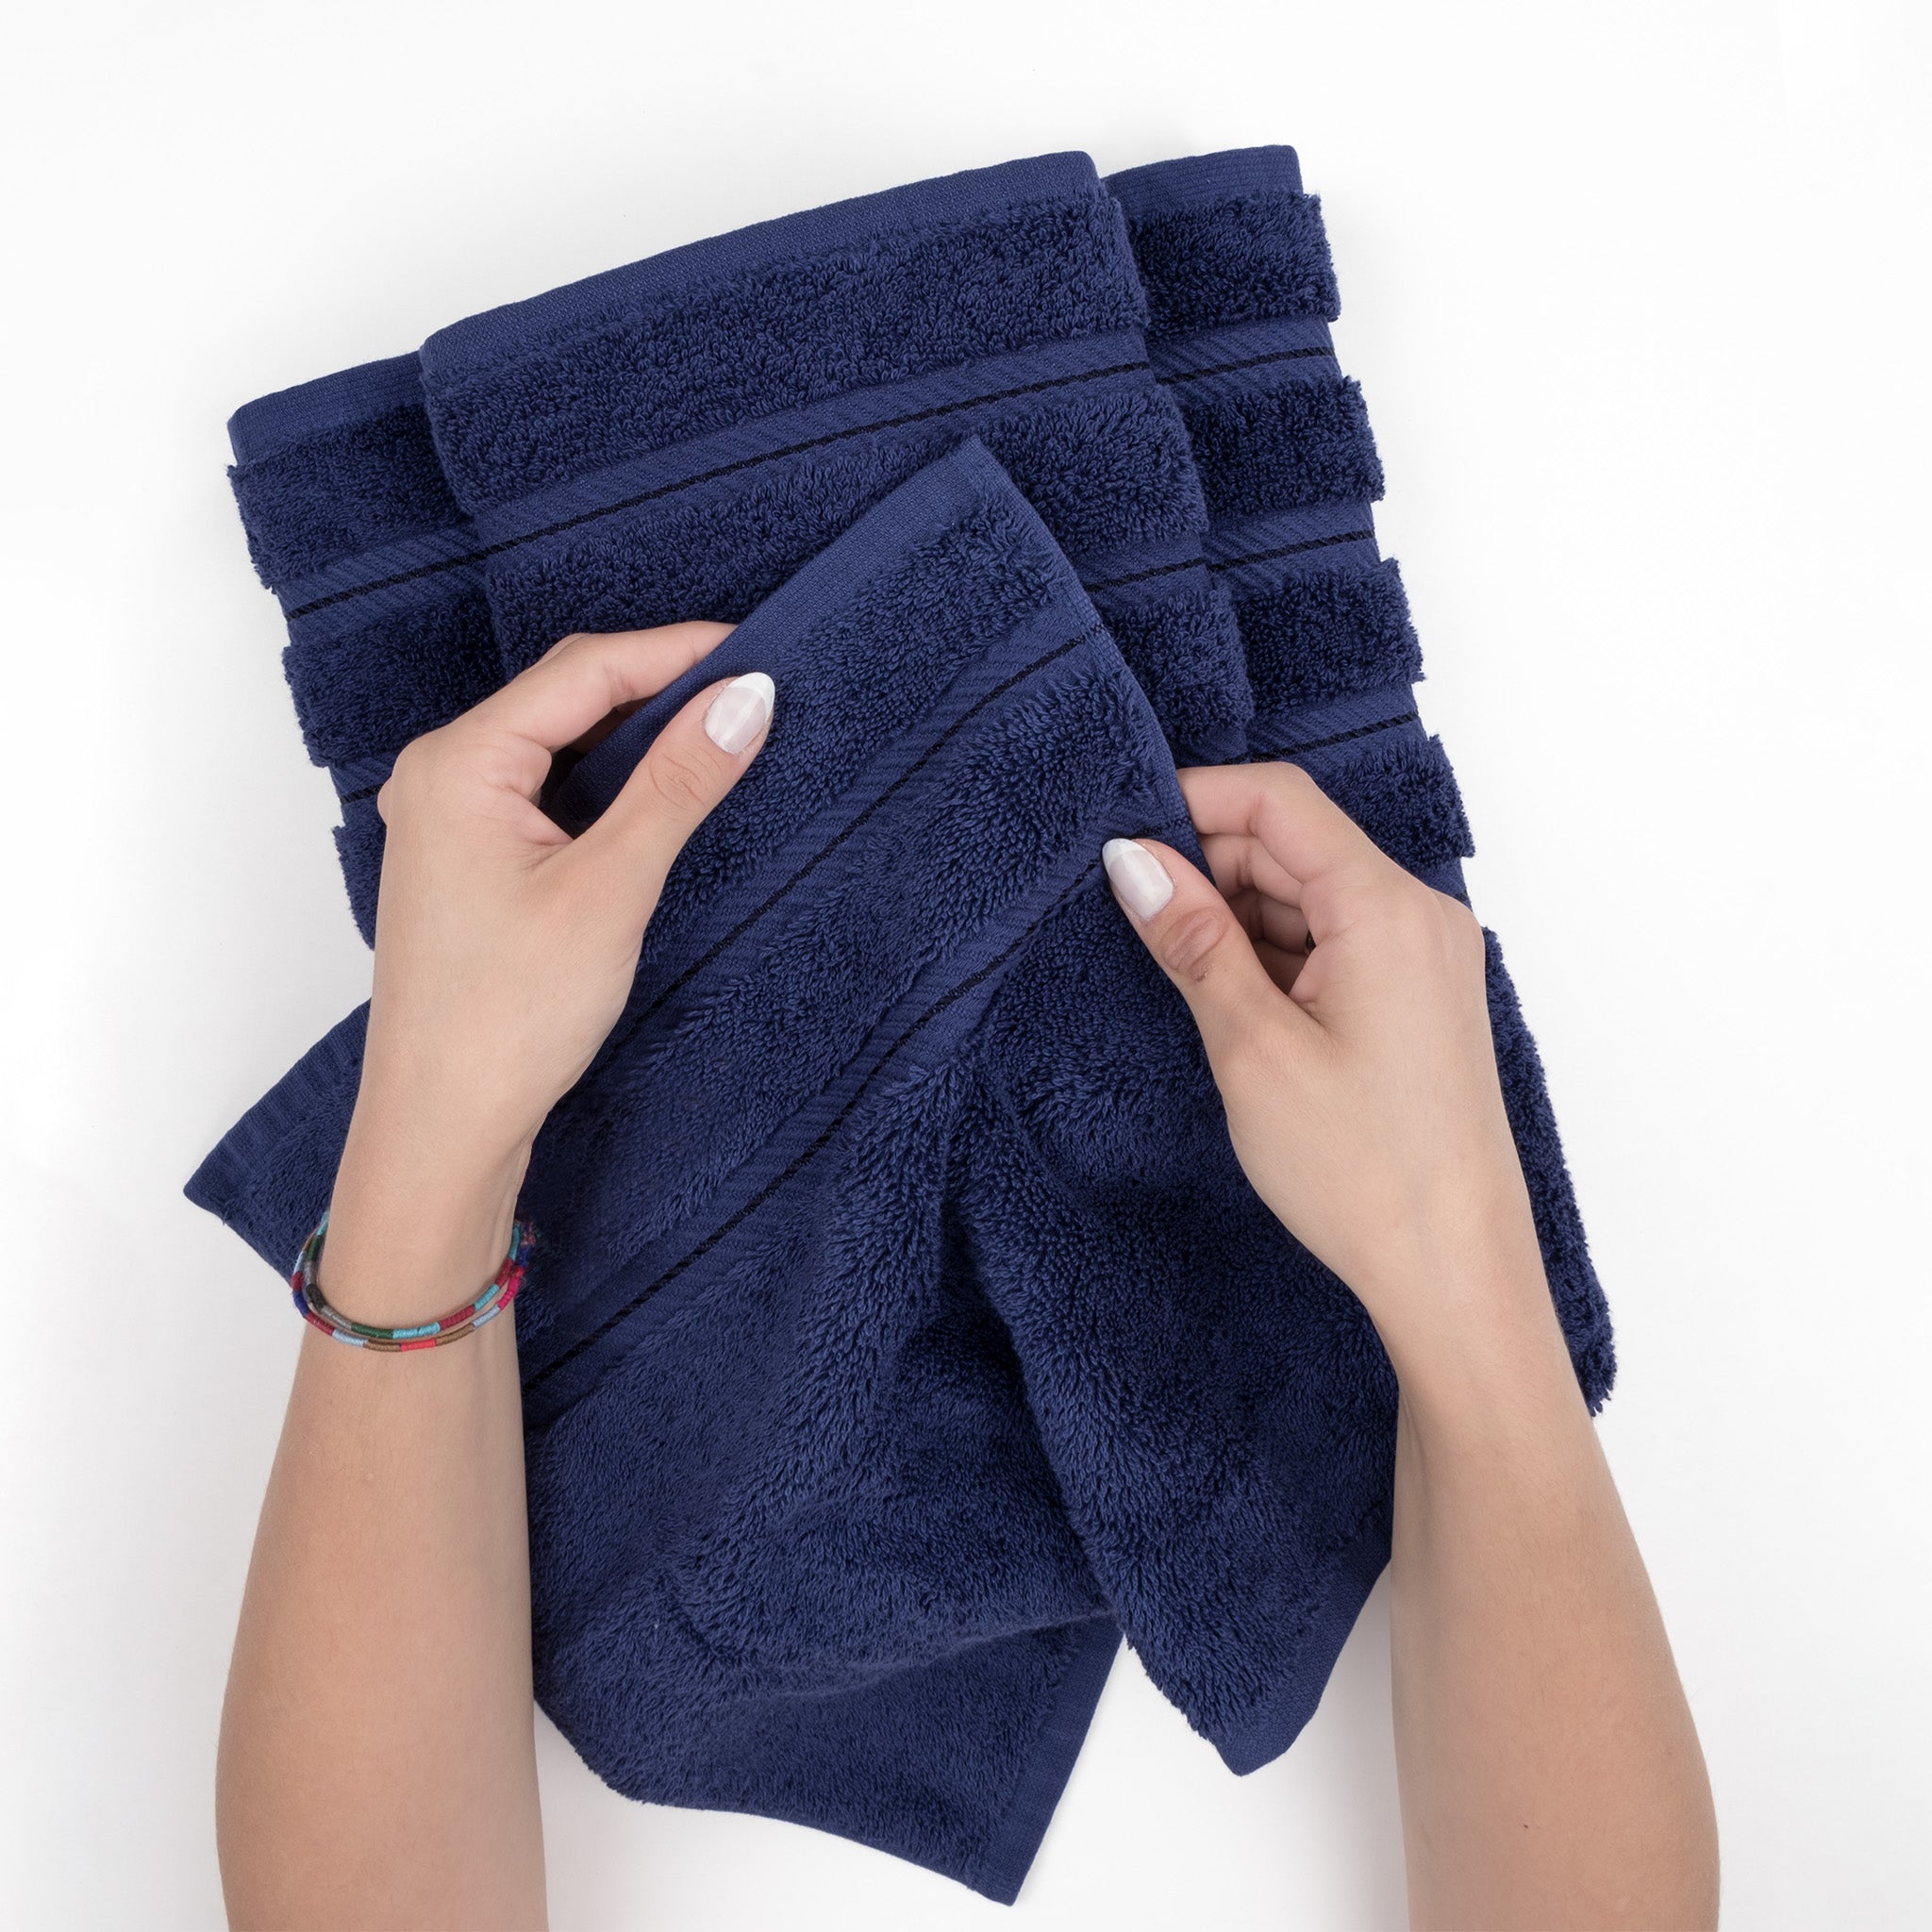 American Soft Linen 100% Turkish Cotton 6 Piece Towel Set Wholesale navy-blue-5